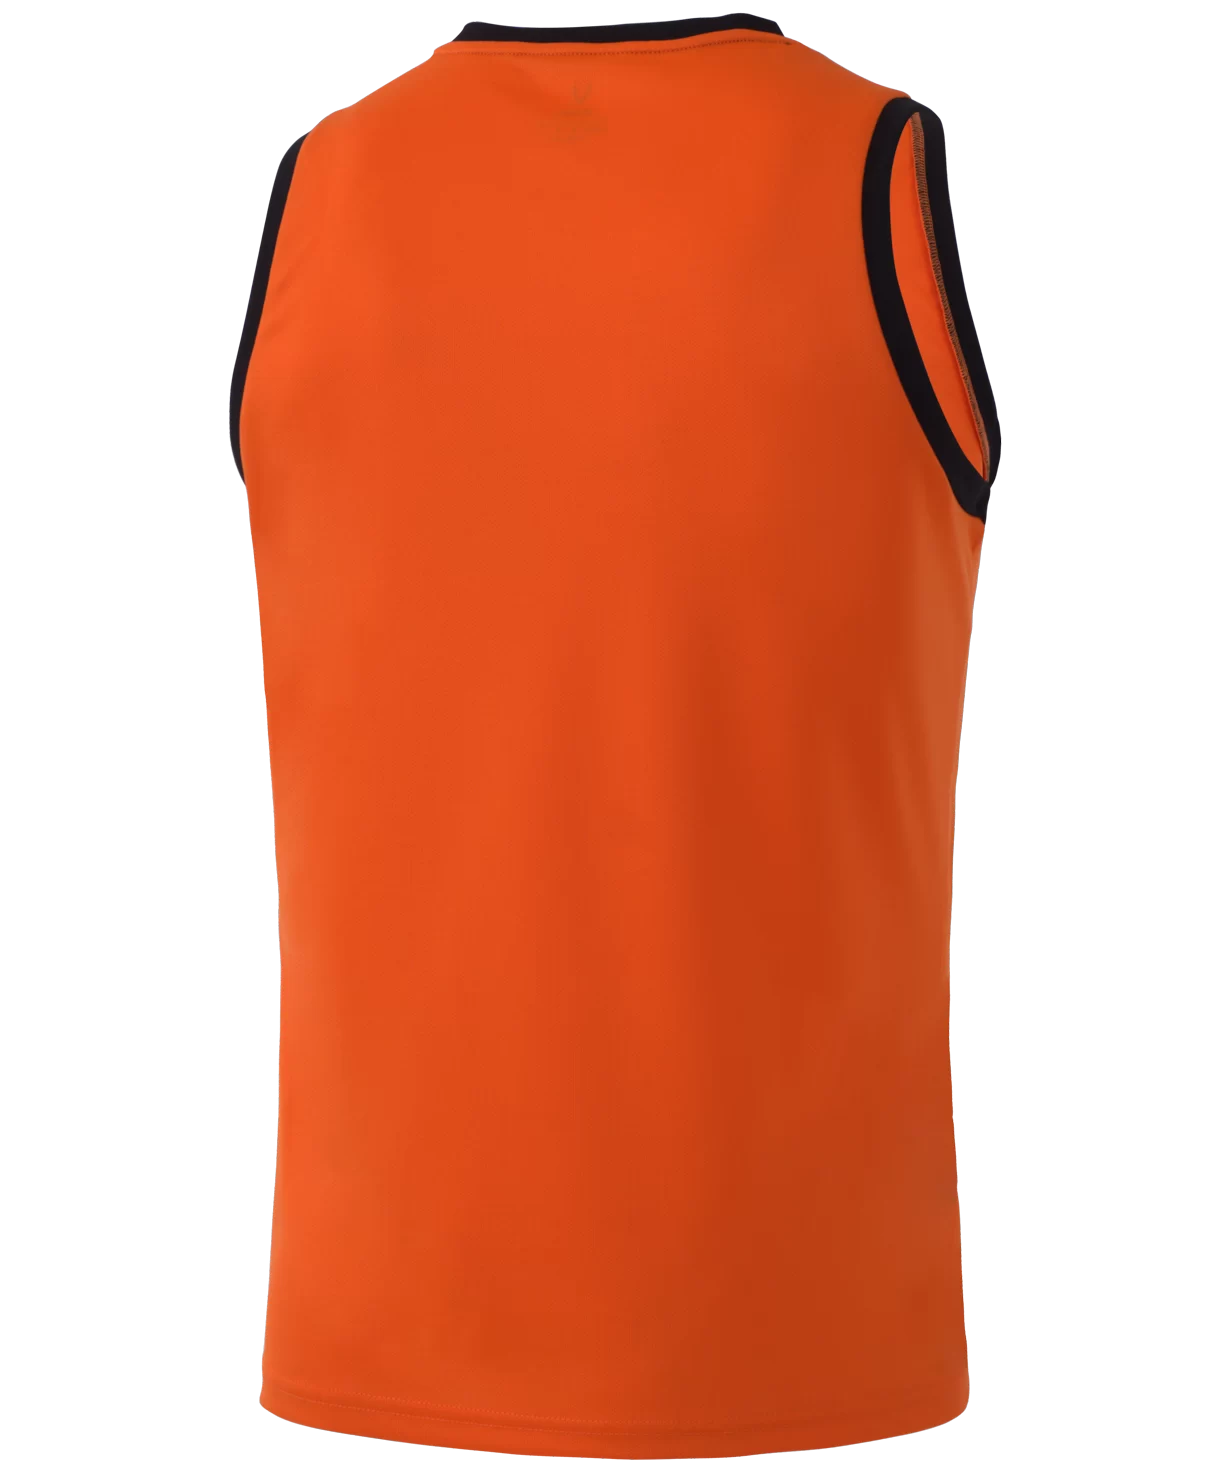 Реальное фото Майка баскетбольная Camp Basic, оранжевый Jögel от магазина Спортев